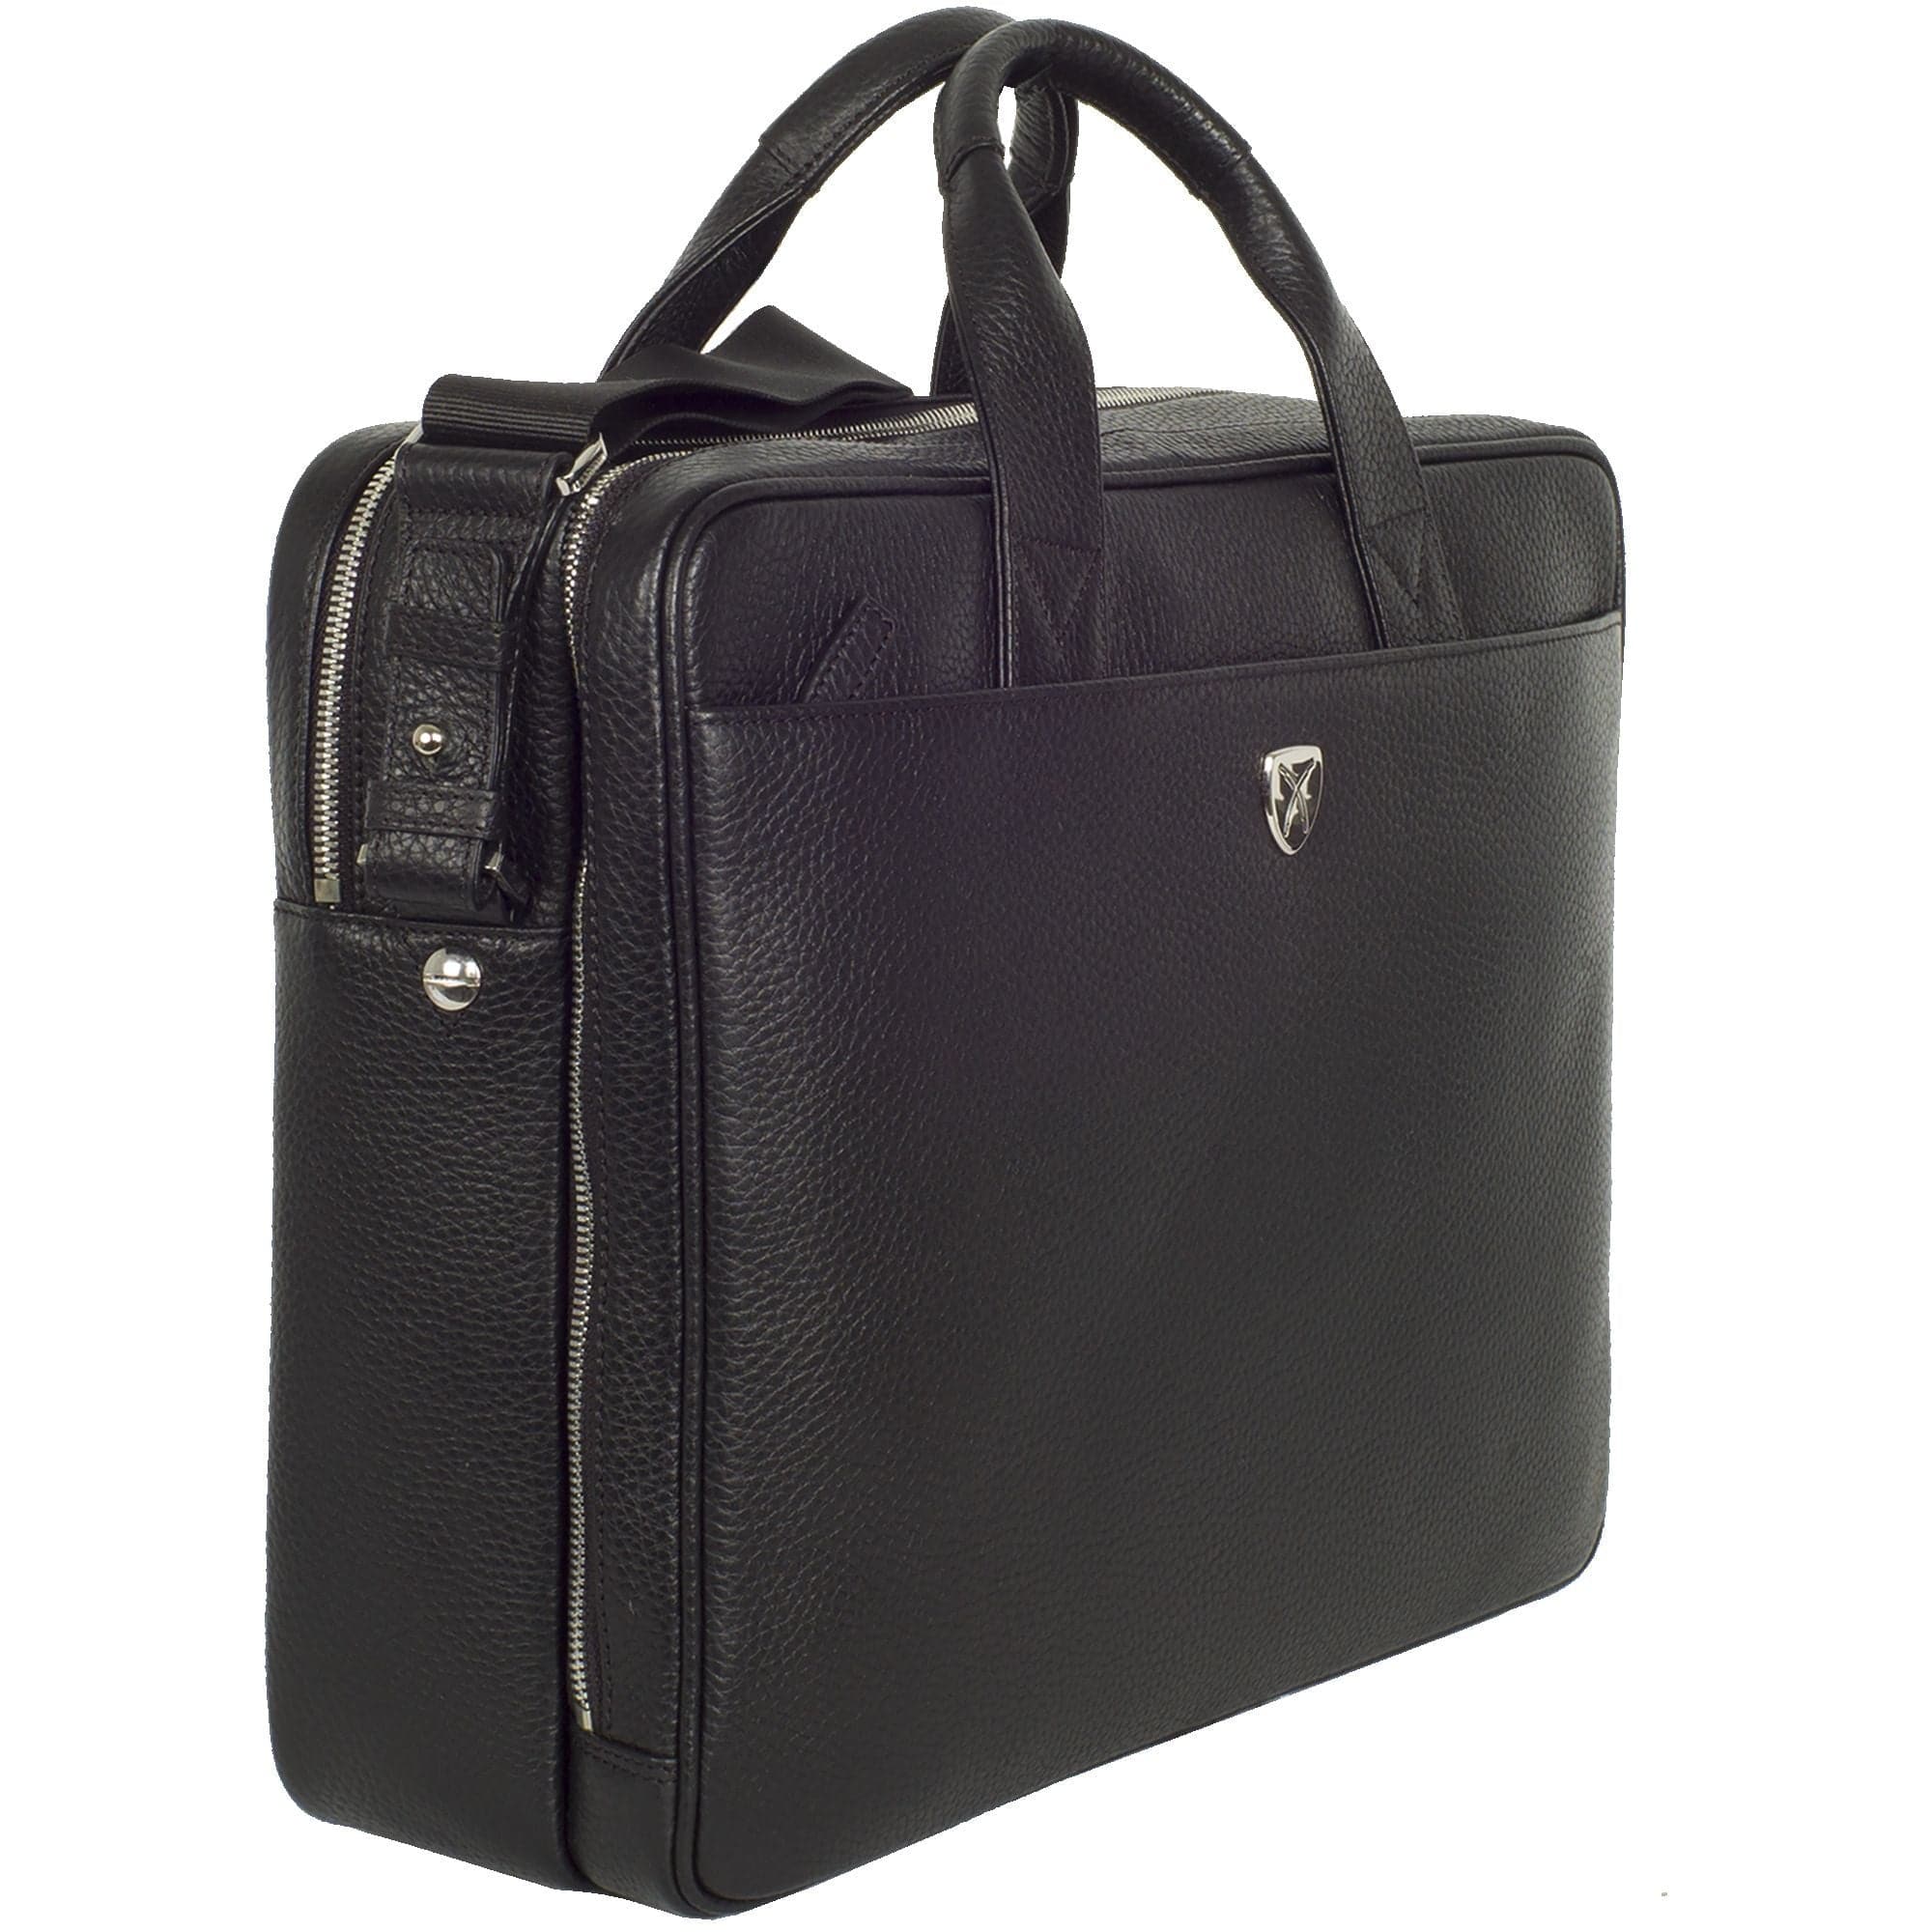 Businesstasche Laptoptasche 15 Zoll leicht genarbtes Leder schwarz 2 große Fächer